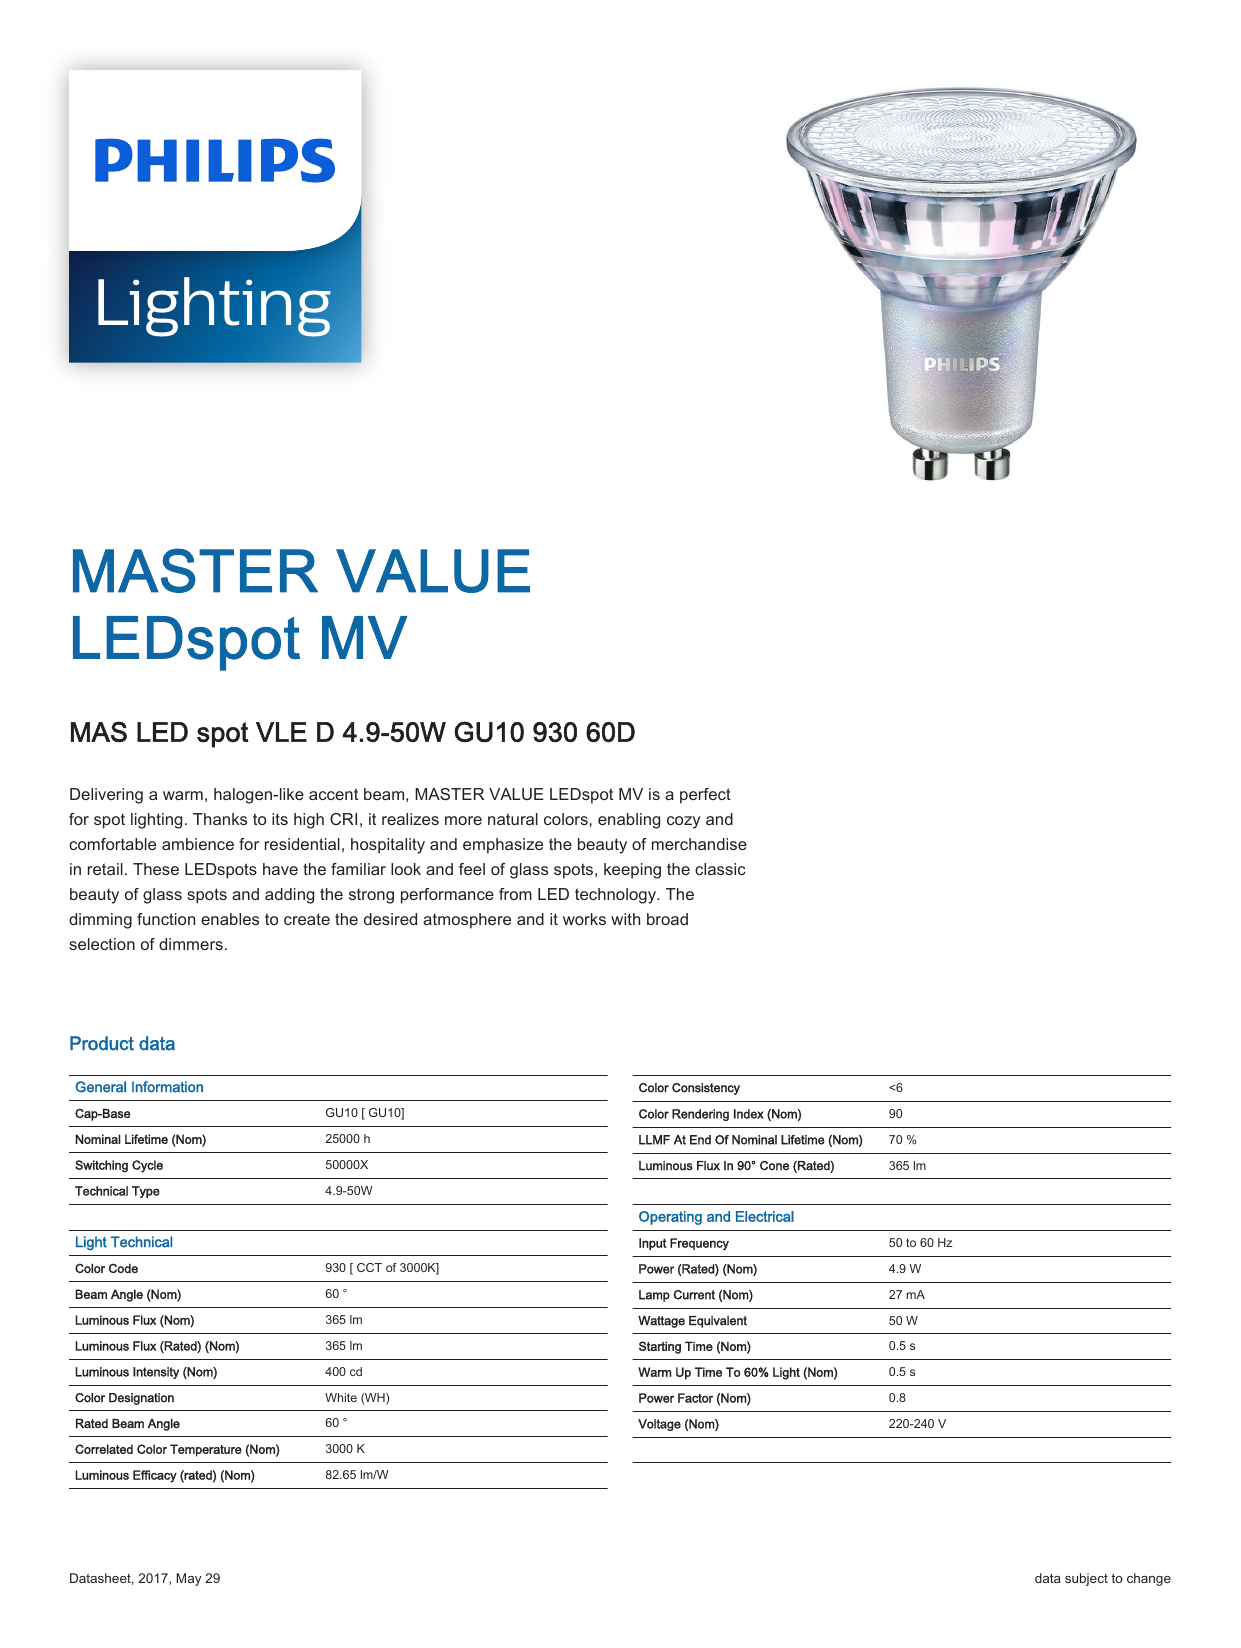 Philips MASTER LED spot VLE D 4.9-50W GU10 940 60D 